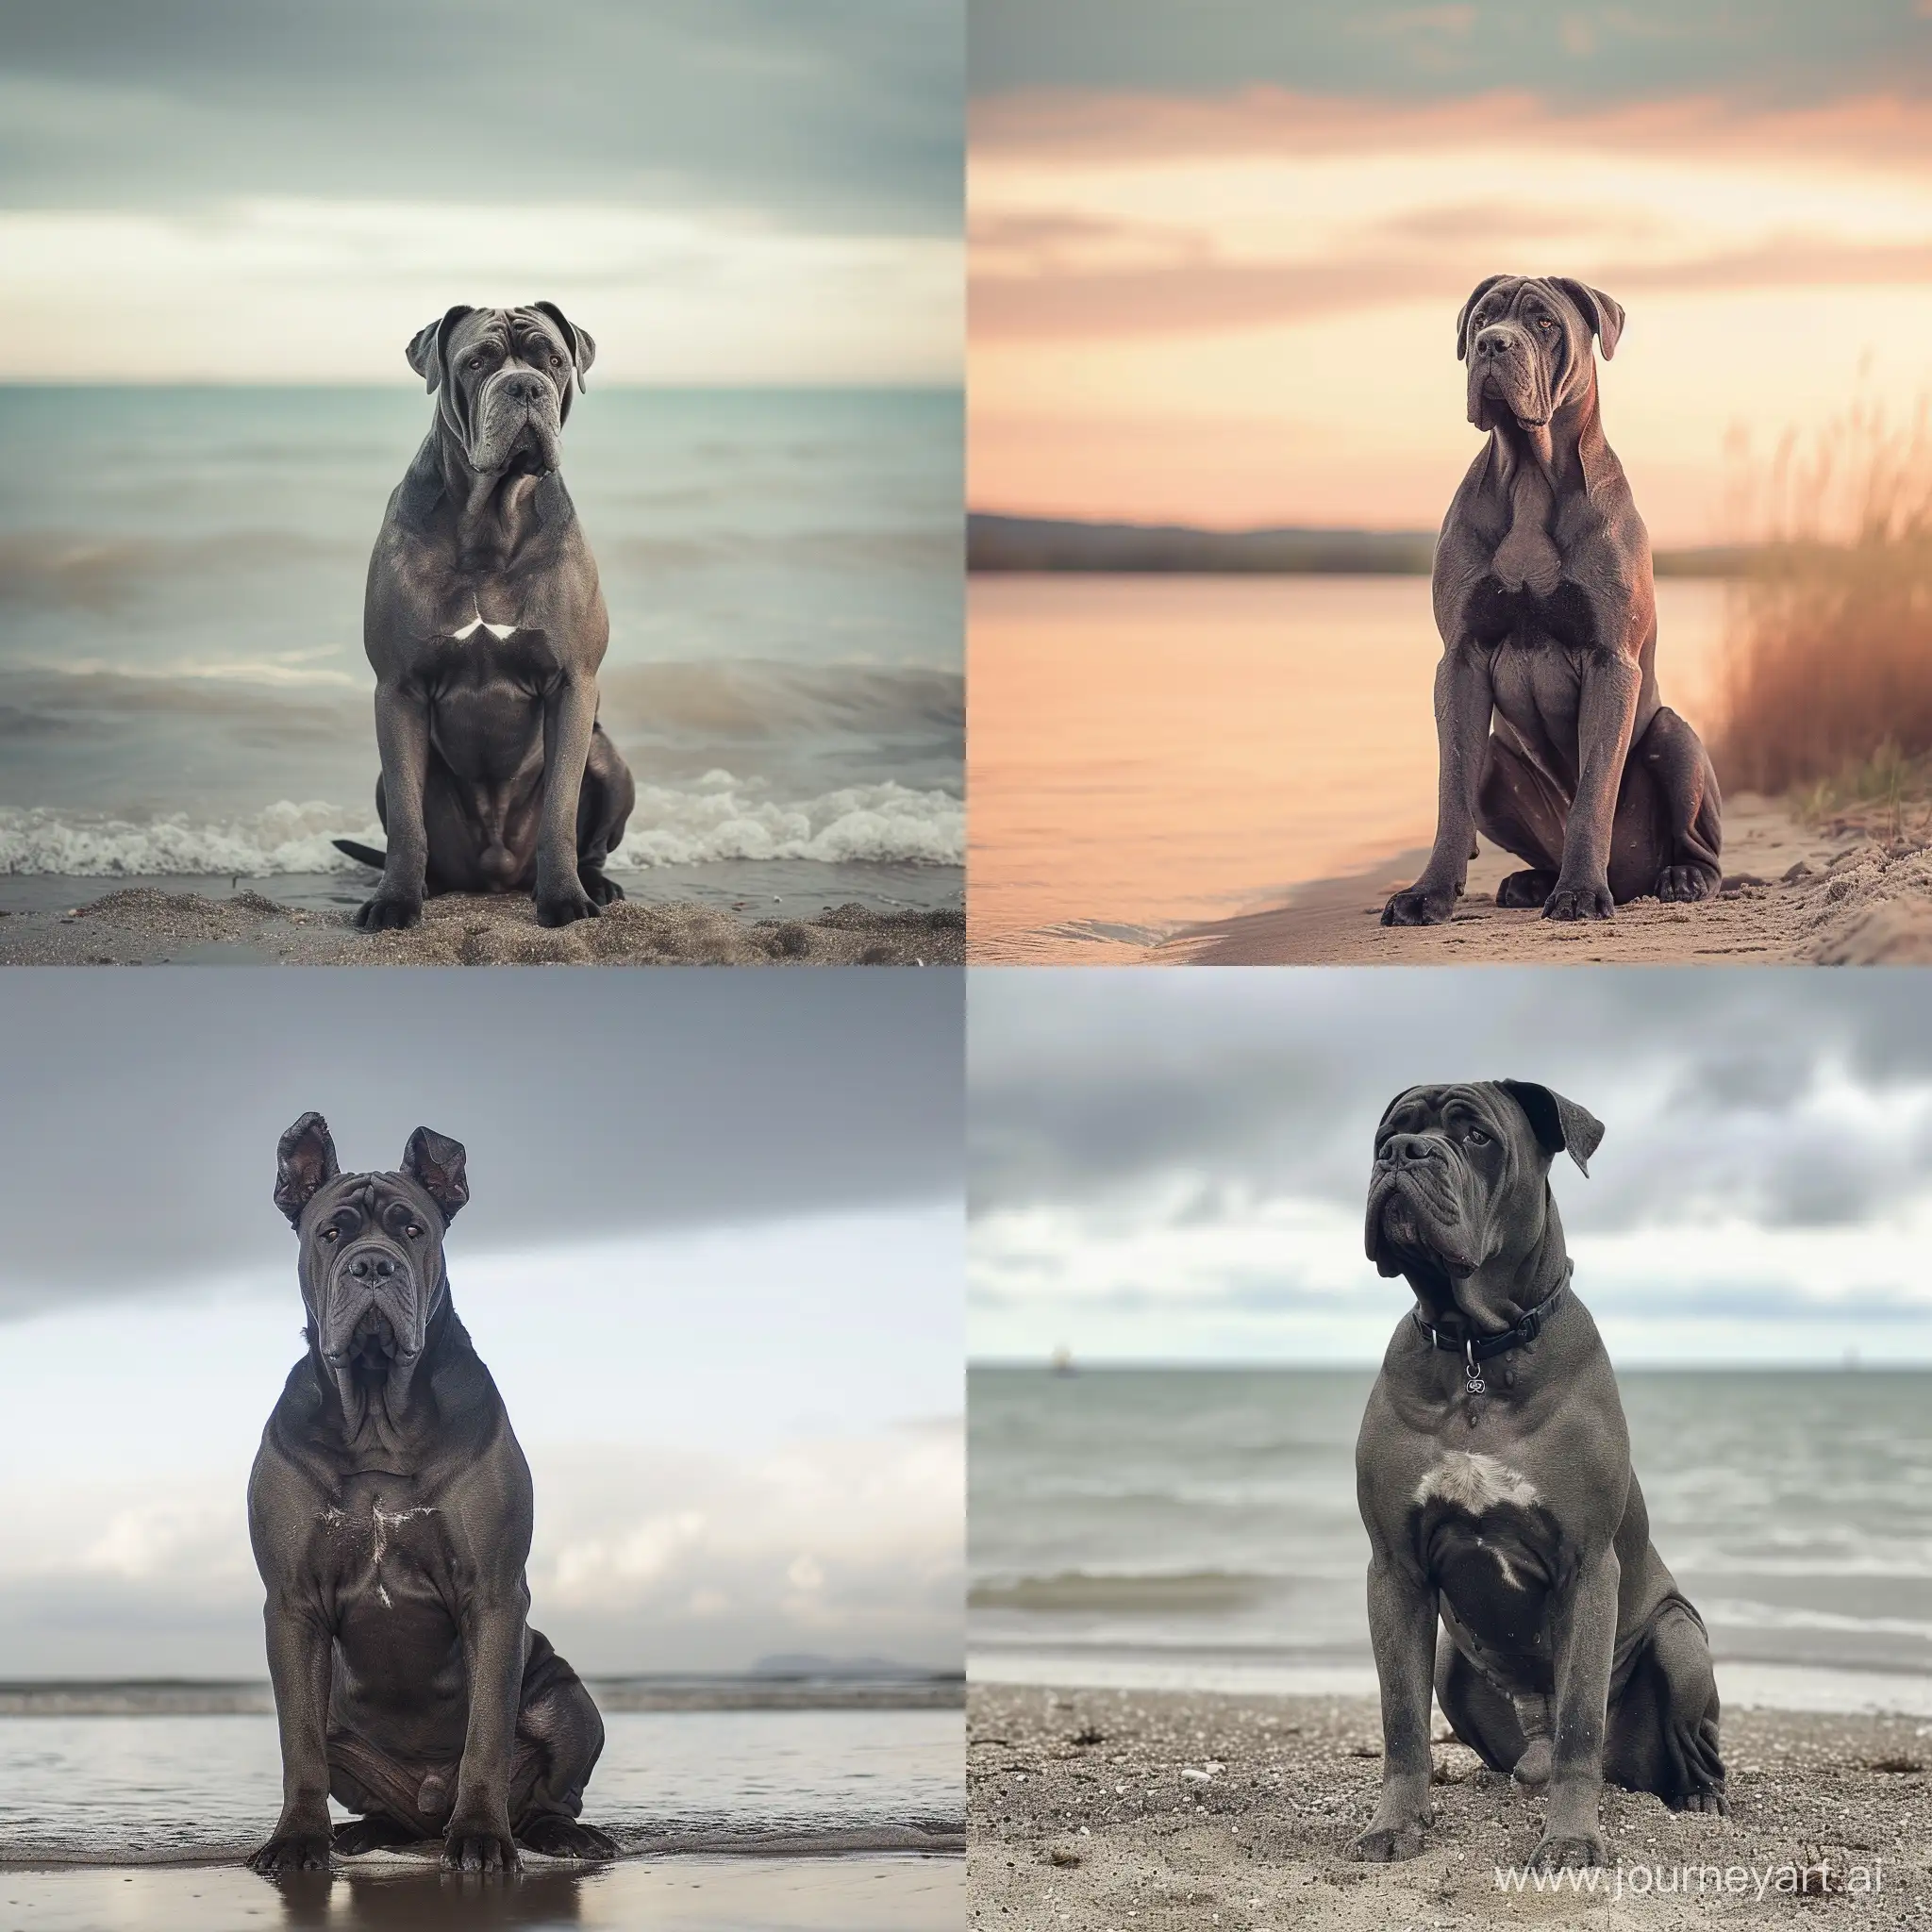 Contemplative-Cane-Corso-Dog-by-the-Seashore